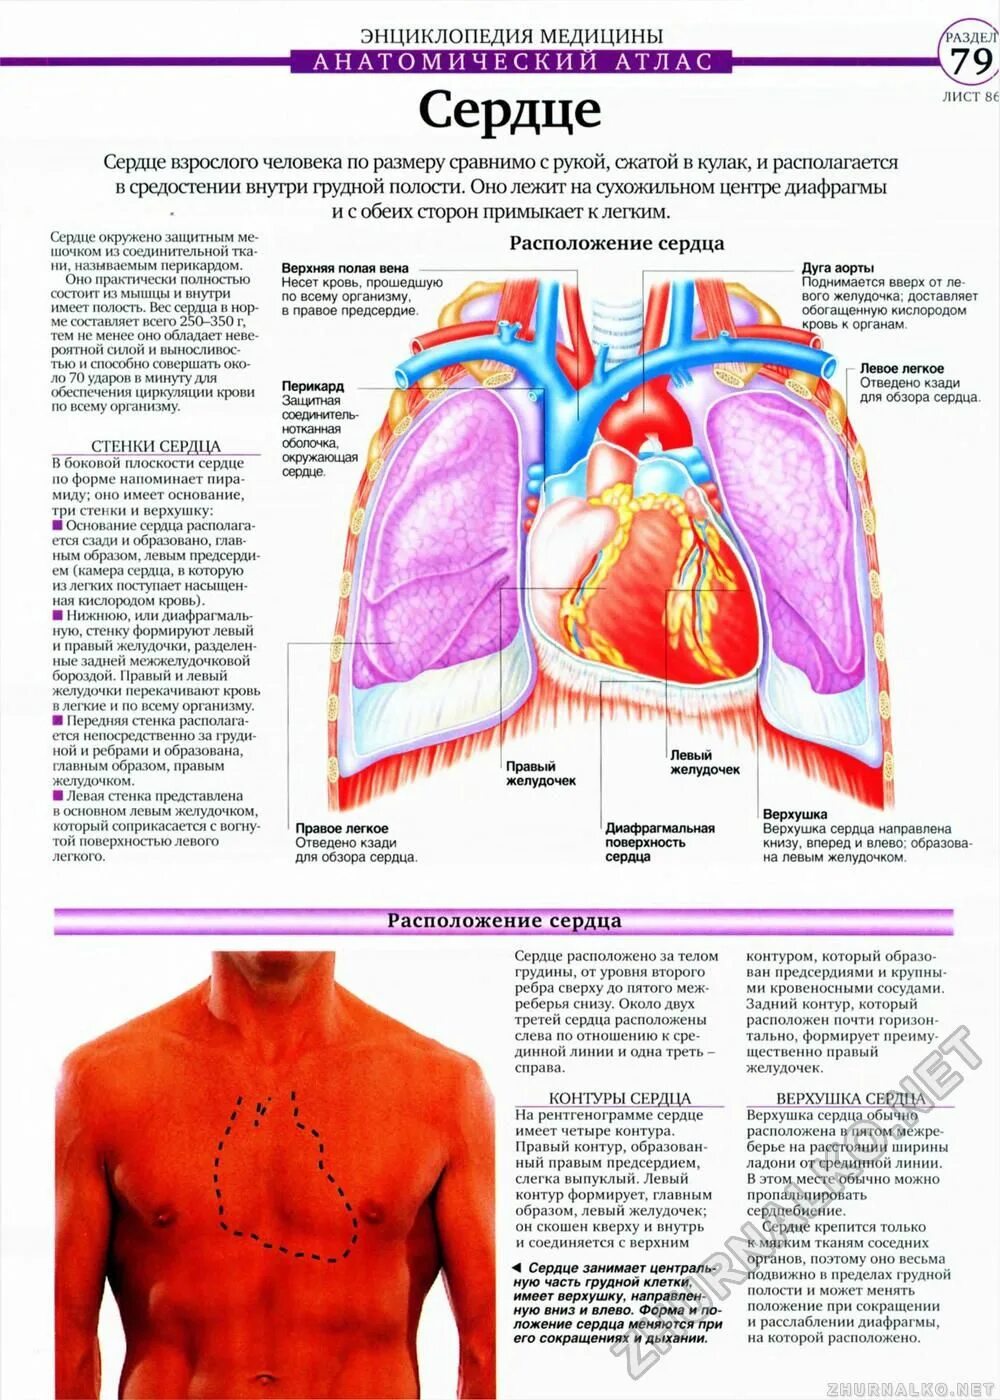 Сердце снизу. Расположение внутренних органов в грудной клетке. Энциклопедия медицины анатомический атлас. Расположение сердца у человека.